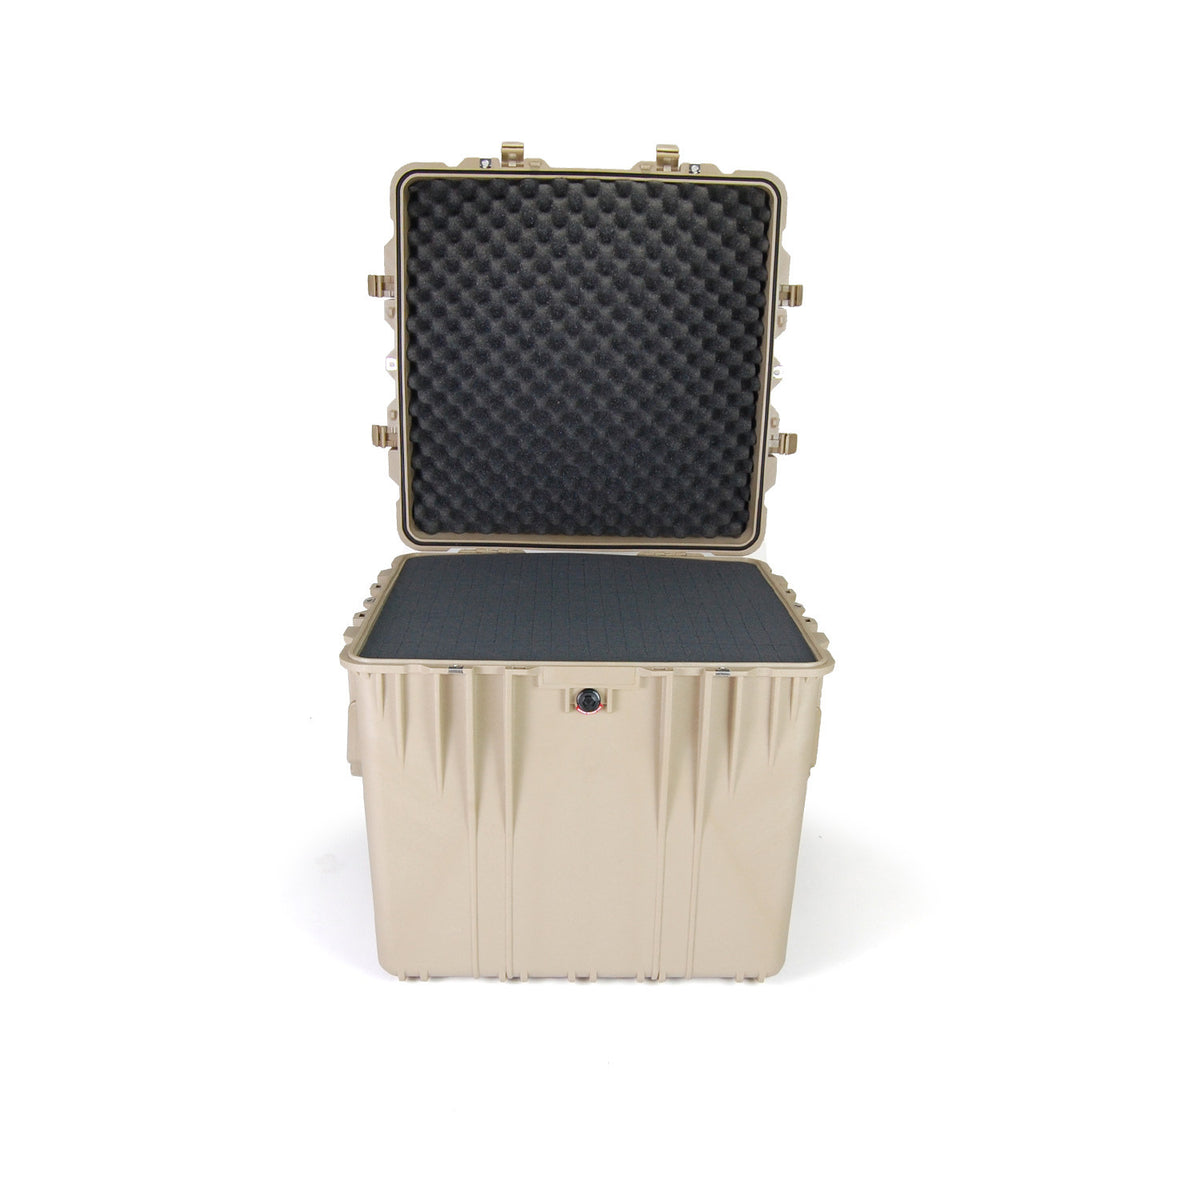 0370 Pelican™ Protector Cube Case